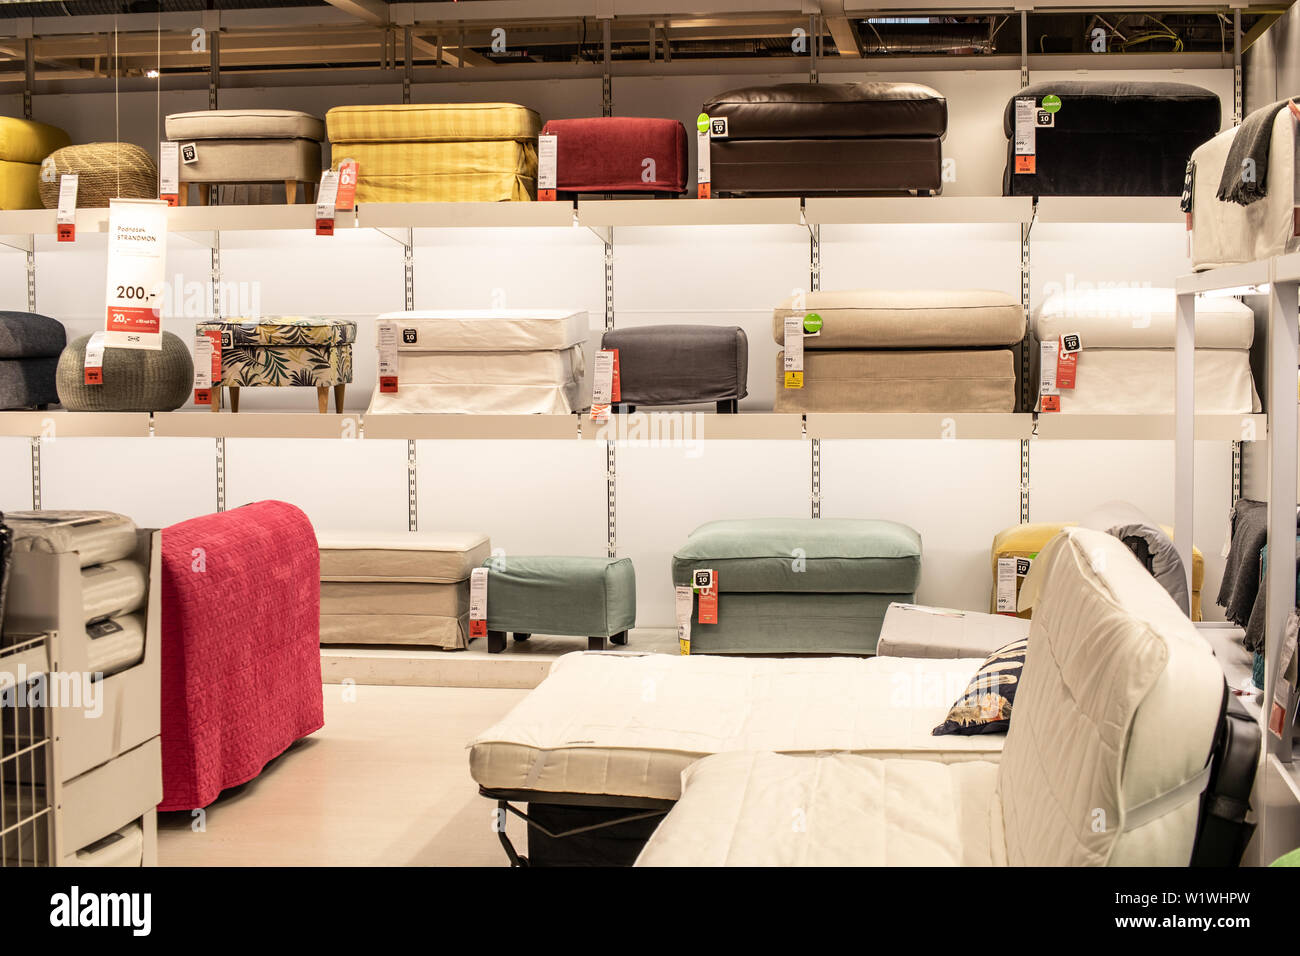 Lodz, Polonia, Jan 2019 mostra, interno negozio IKEA. divani moderni. Design IKEA vende pronti a comporre mobili, elettrodomestici, accessori per la casa. Foto Stock